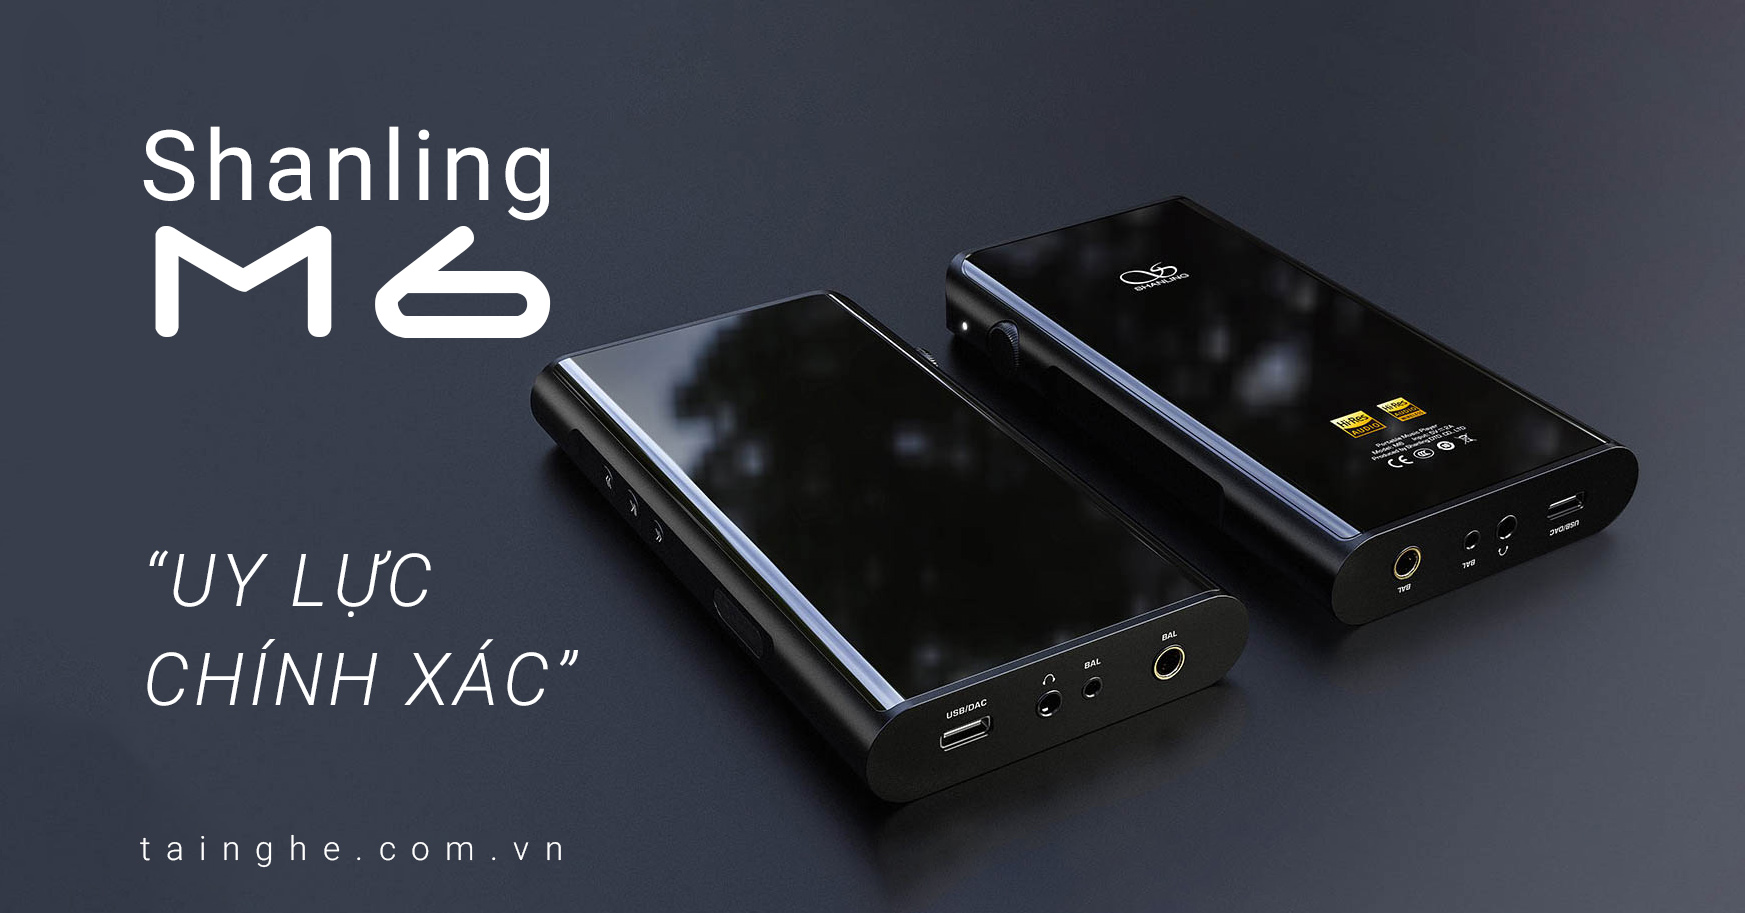 Đánh giá máy nghe nhạc Shanling M6 : Chạy Android, Âm thanh khỏe khoắn và chính xác 